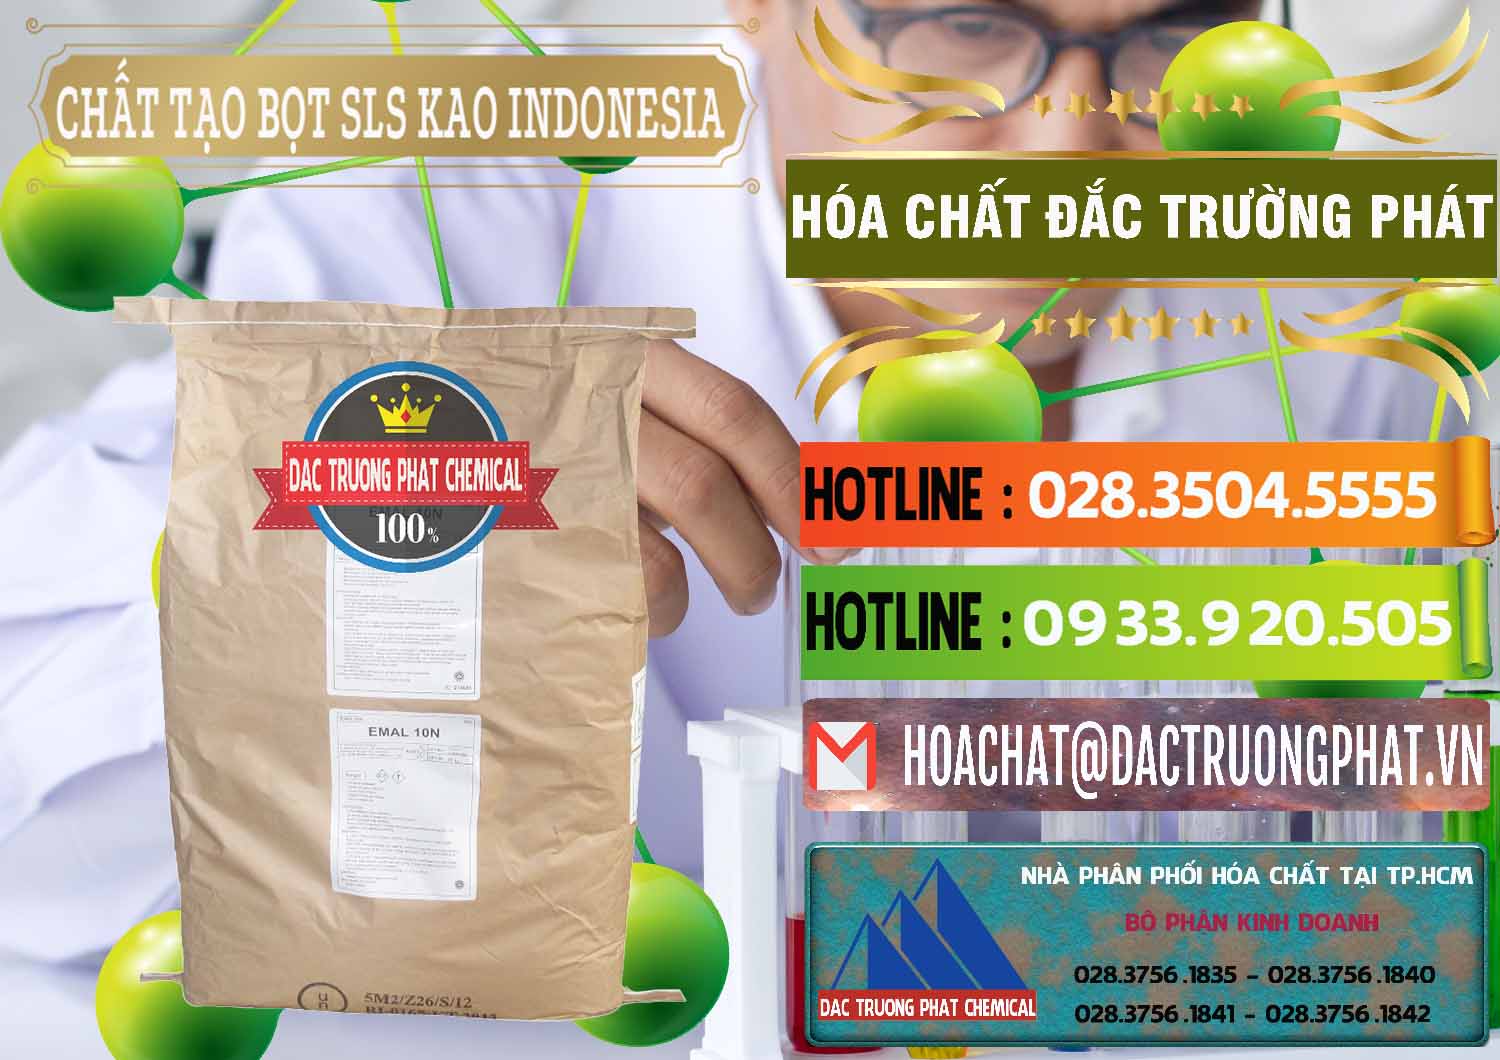 Đơn vị phân phối - bán Chất Tạo Bọt SLS - Sodium Lauryl Sulfate EMAL 10N KAO Indonesia - 0047 - Nhà cung cấp _ kinh doanh hóa chất tại TP.HCM - cungcaphoachat.com.vn